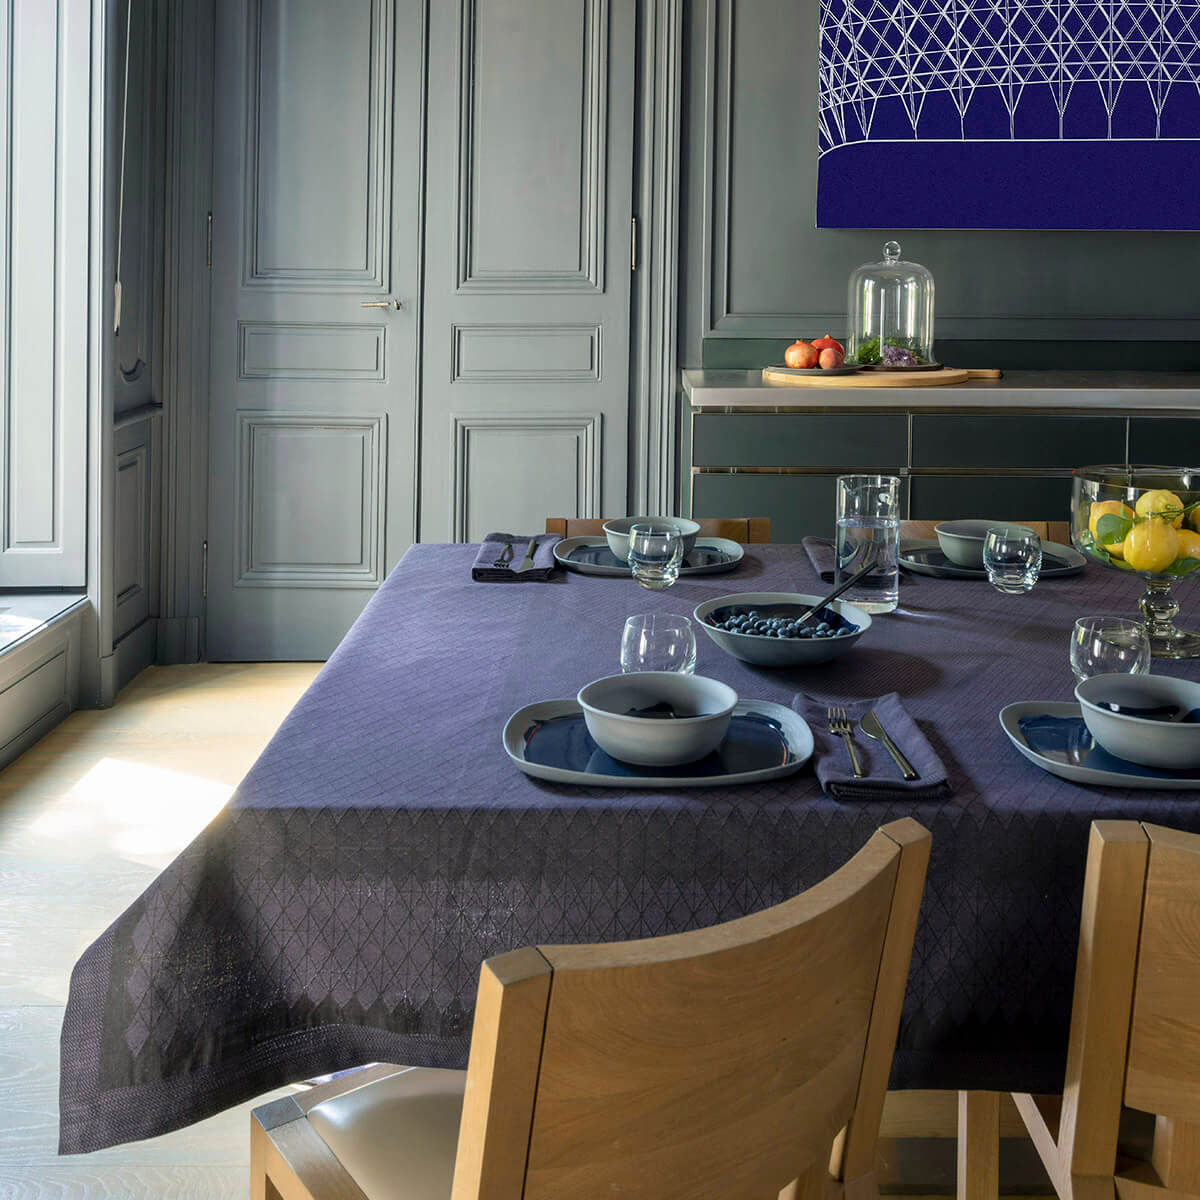 Club Prusse Table Linens by Le Jacquard Francais - Tablecloth, napkins, placemats